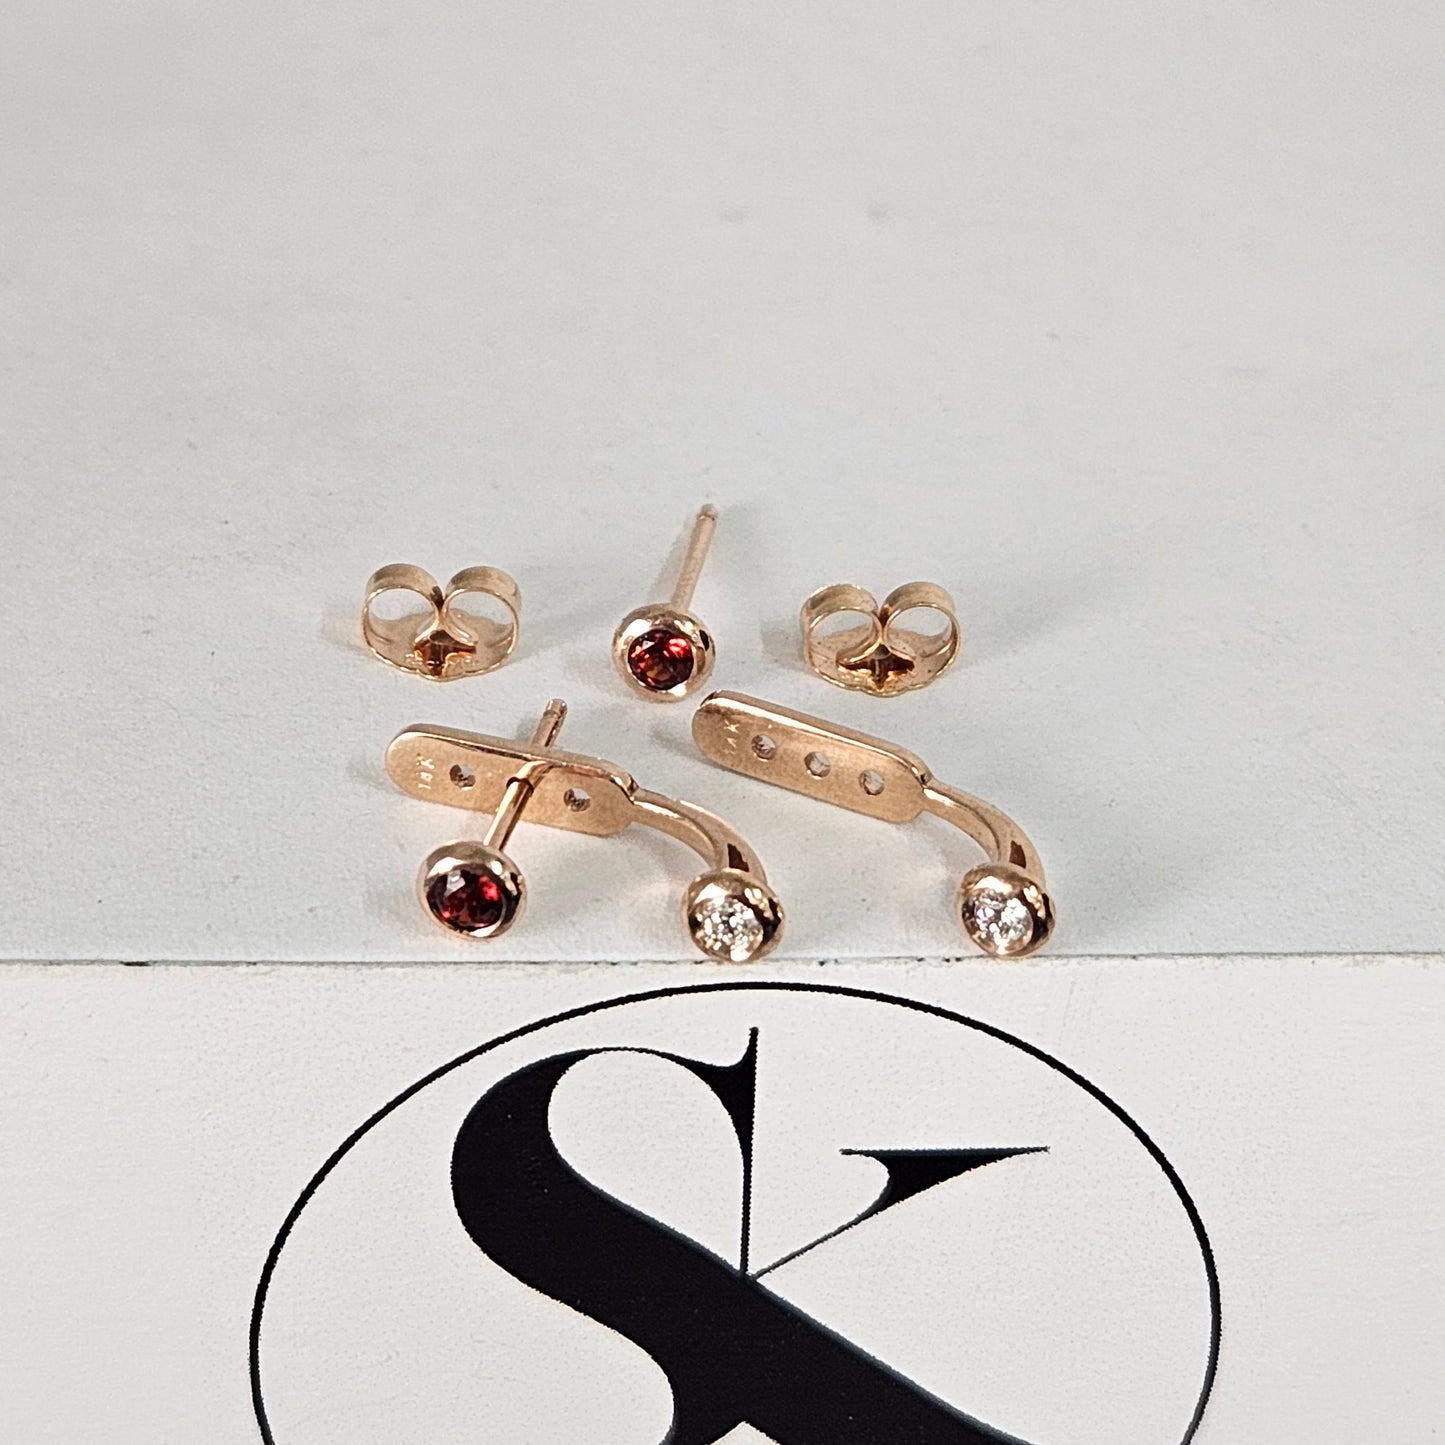 Garnet Bezel Set Stud Earrings/Round Garnet Stud Earrings/Garnet Solitaire Stud Pair Earrings/Gifts for her/Anniversary gift